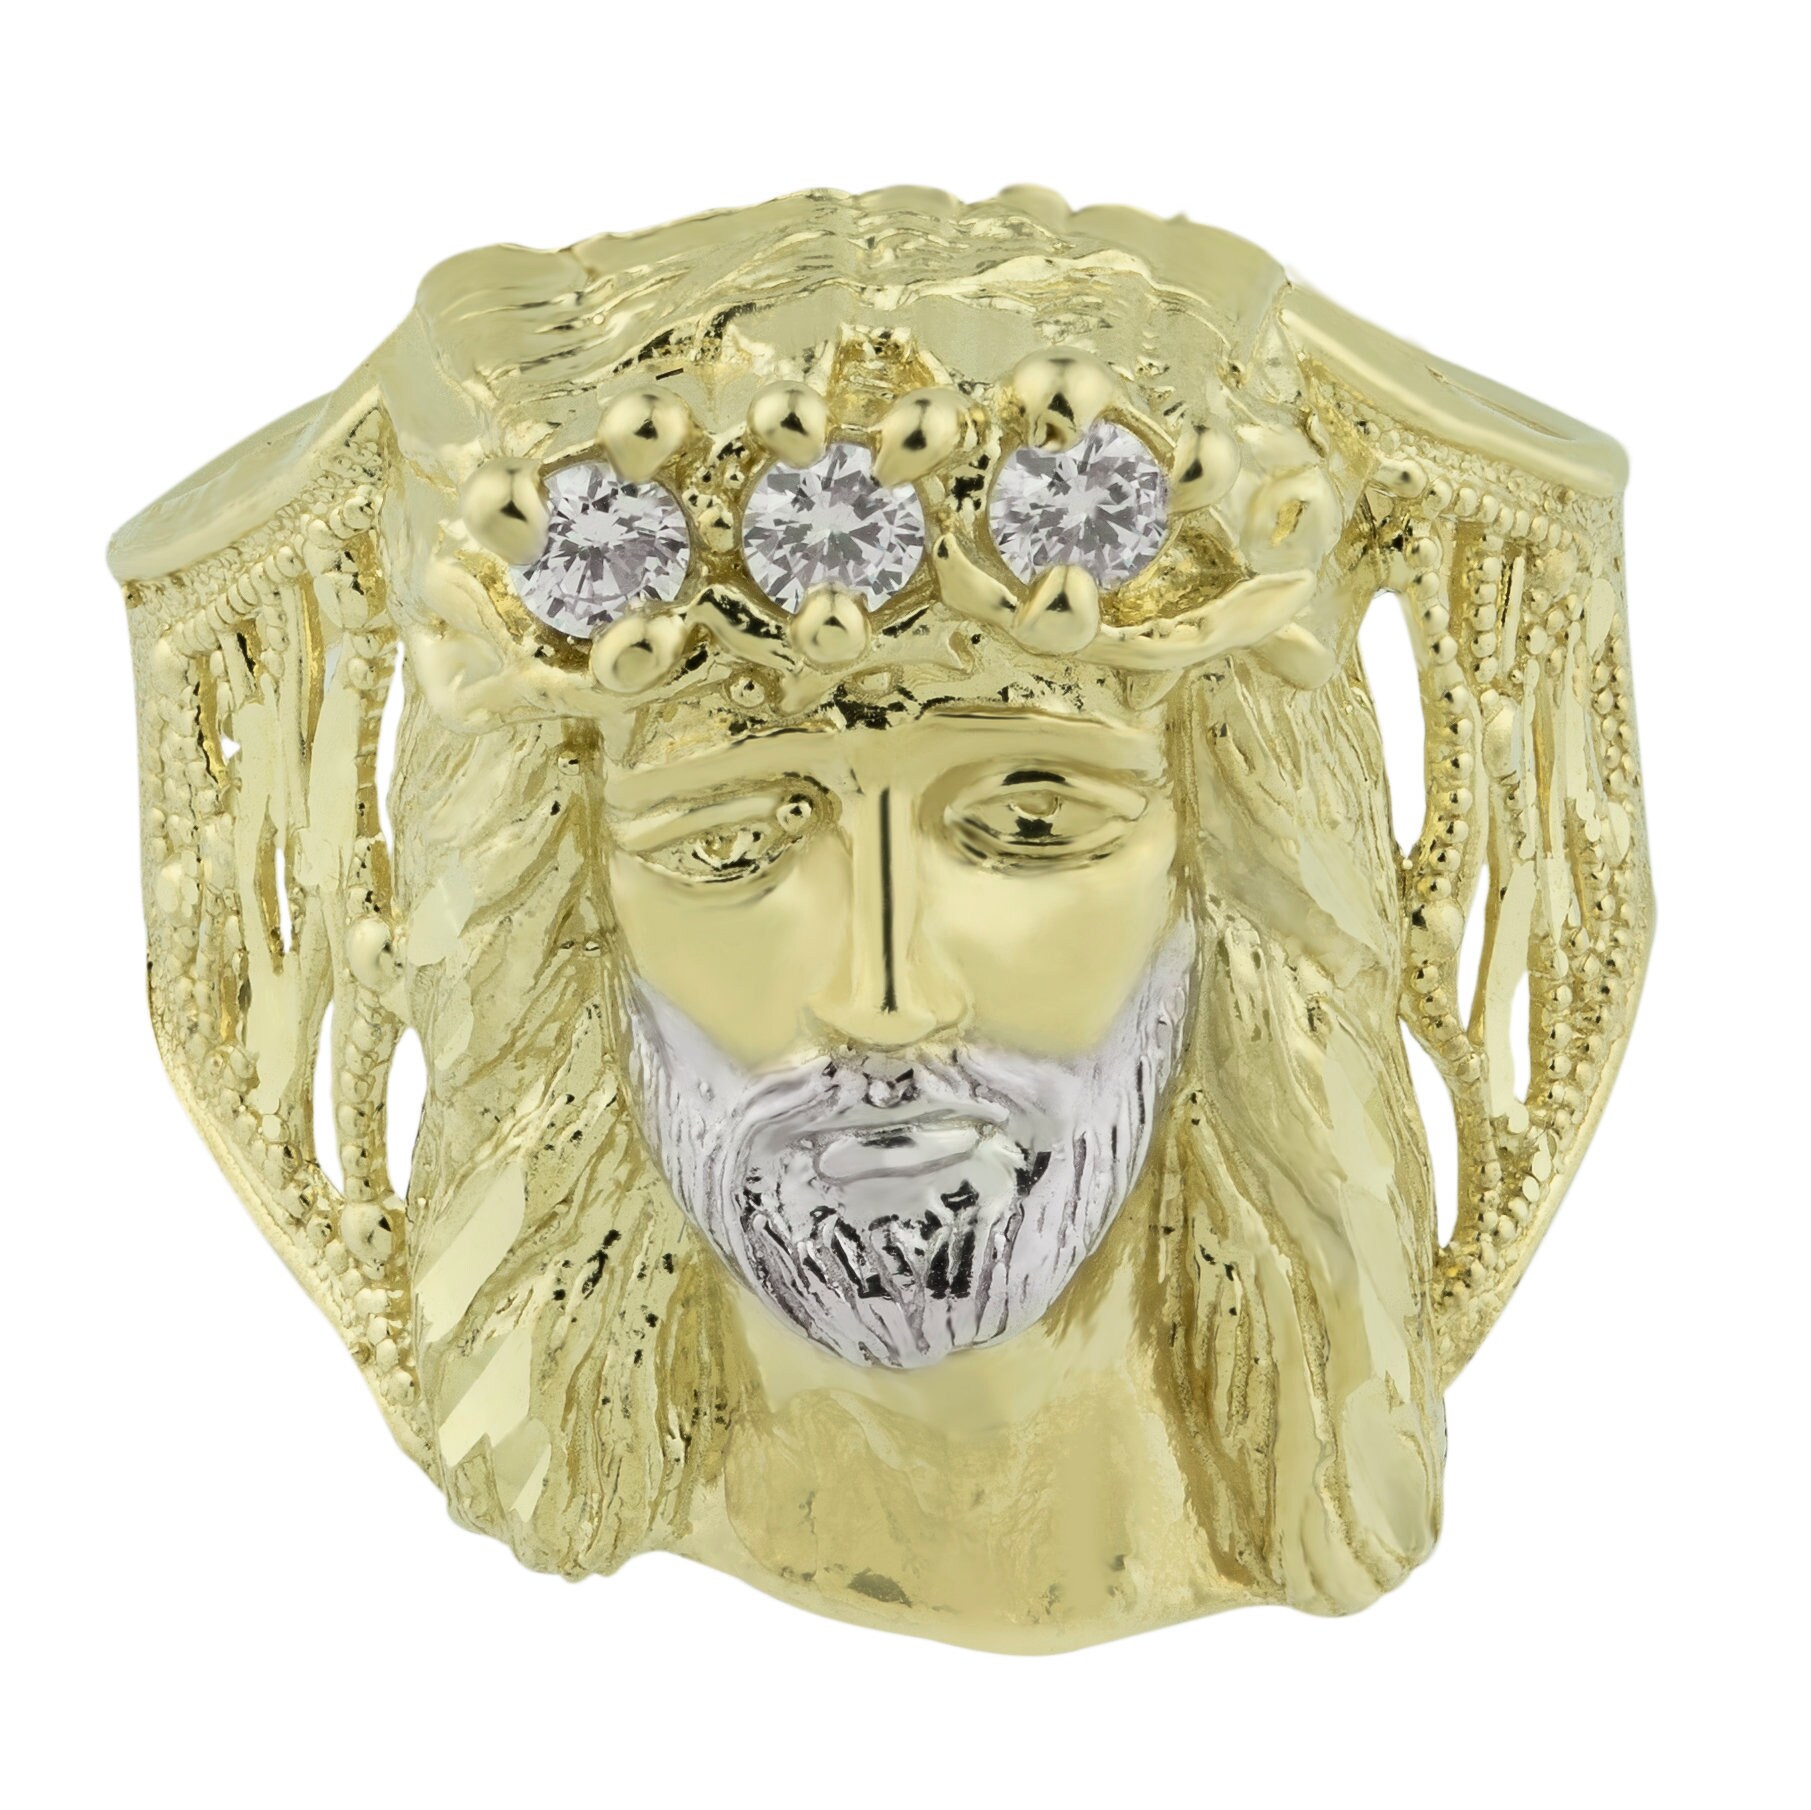 Jesus Kopf Strukturierte Zwei-Ton Cz Ring Solide 10K Gelb Weiß Gold von BayamJewelry